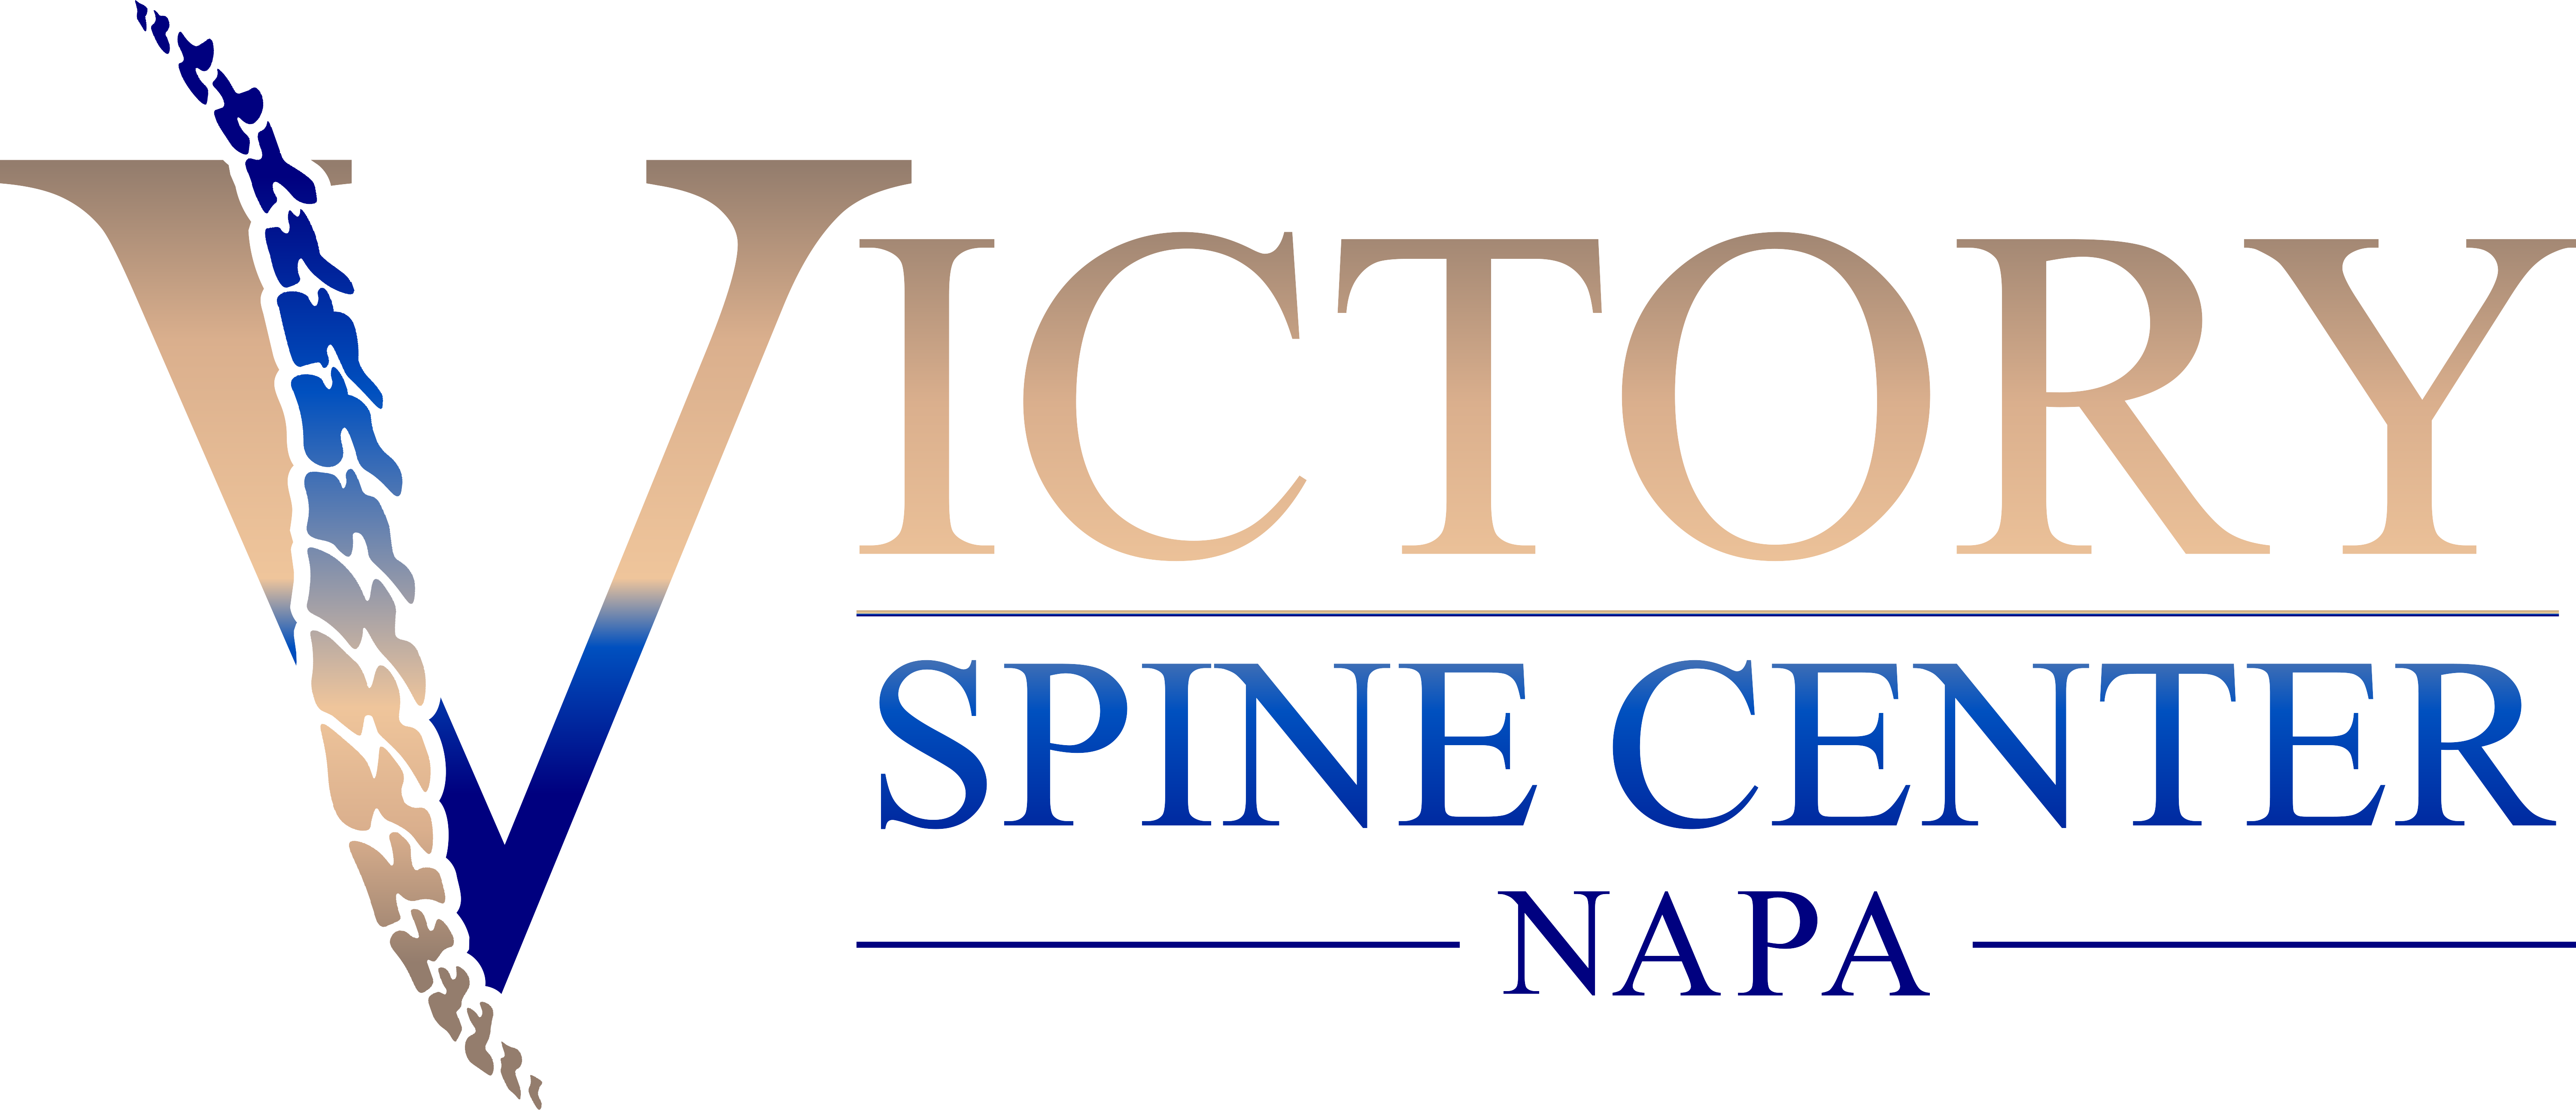 Visit Victory Spine Center